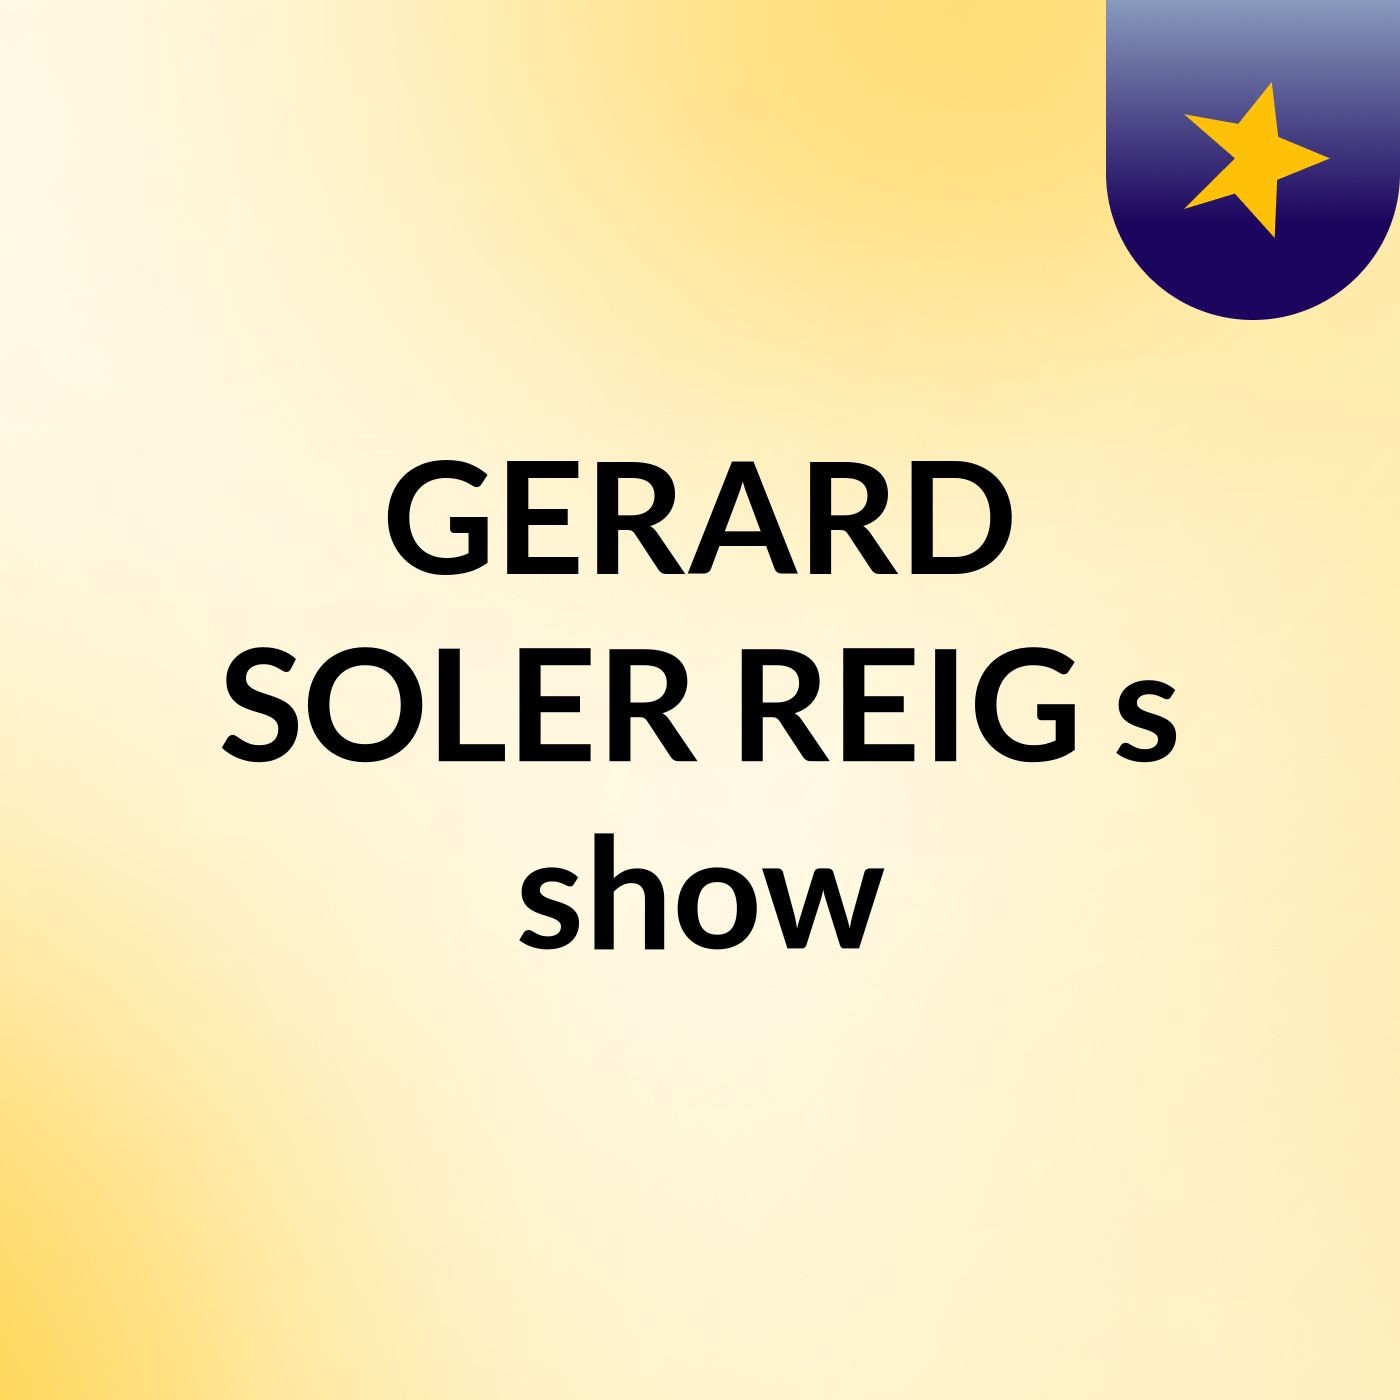 GERARD SOLER REIG's show